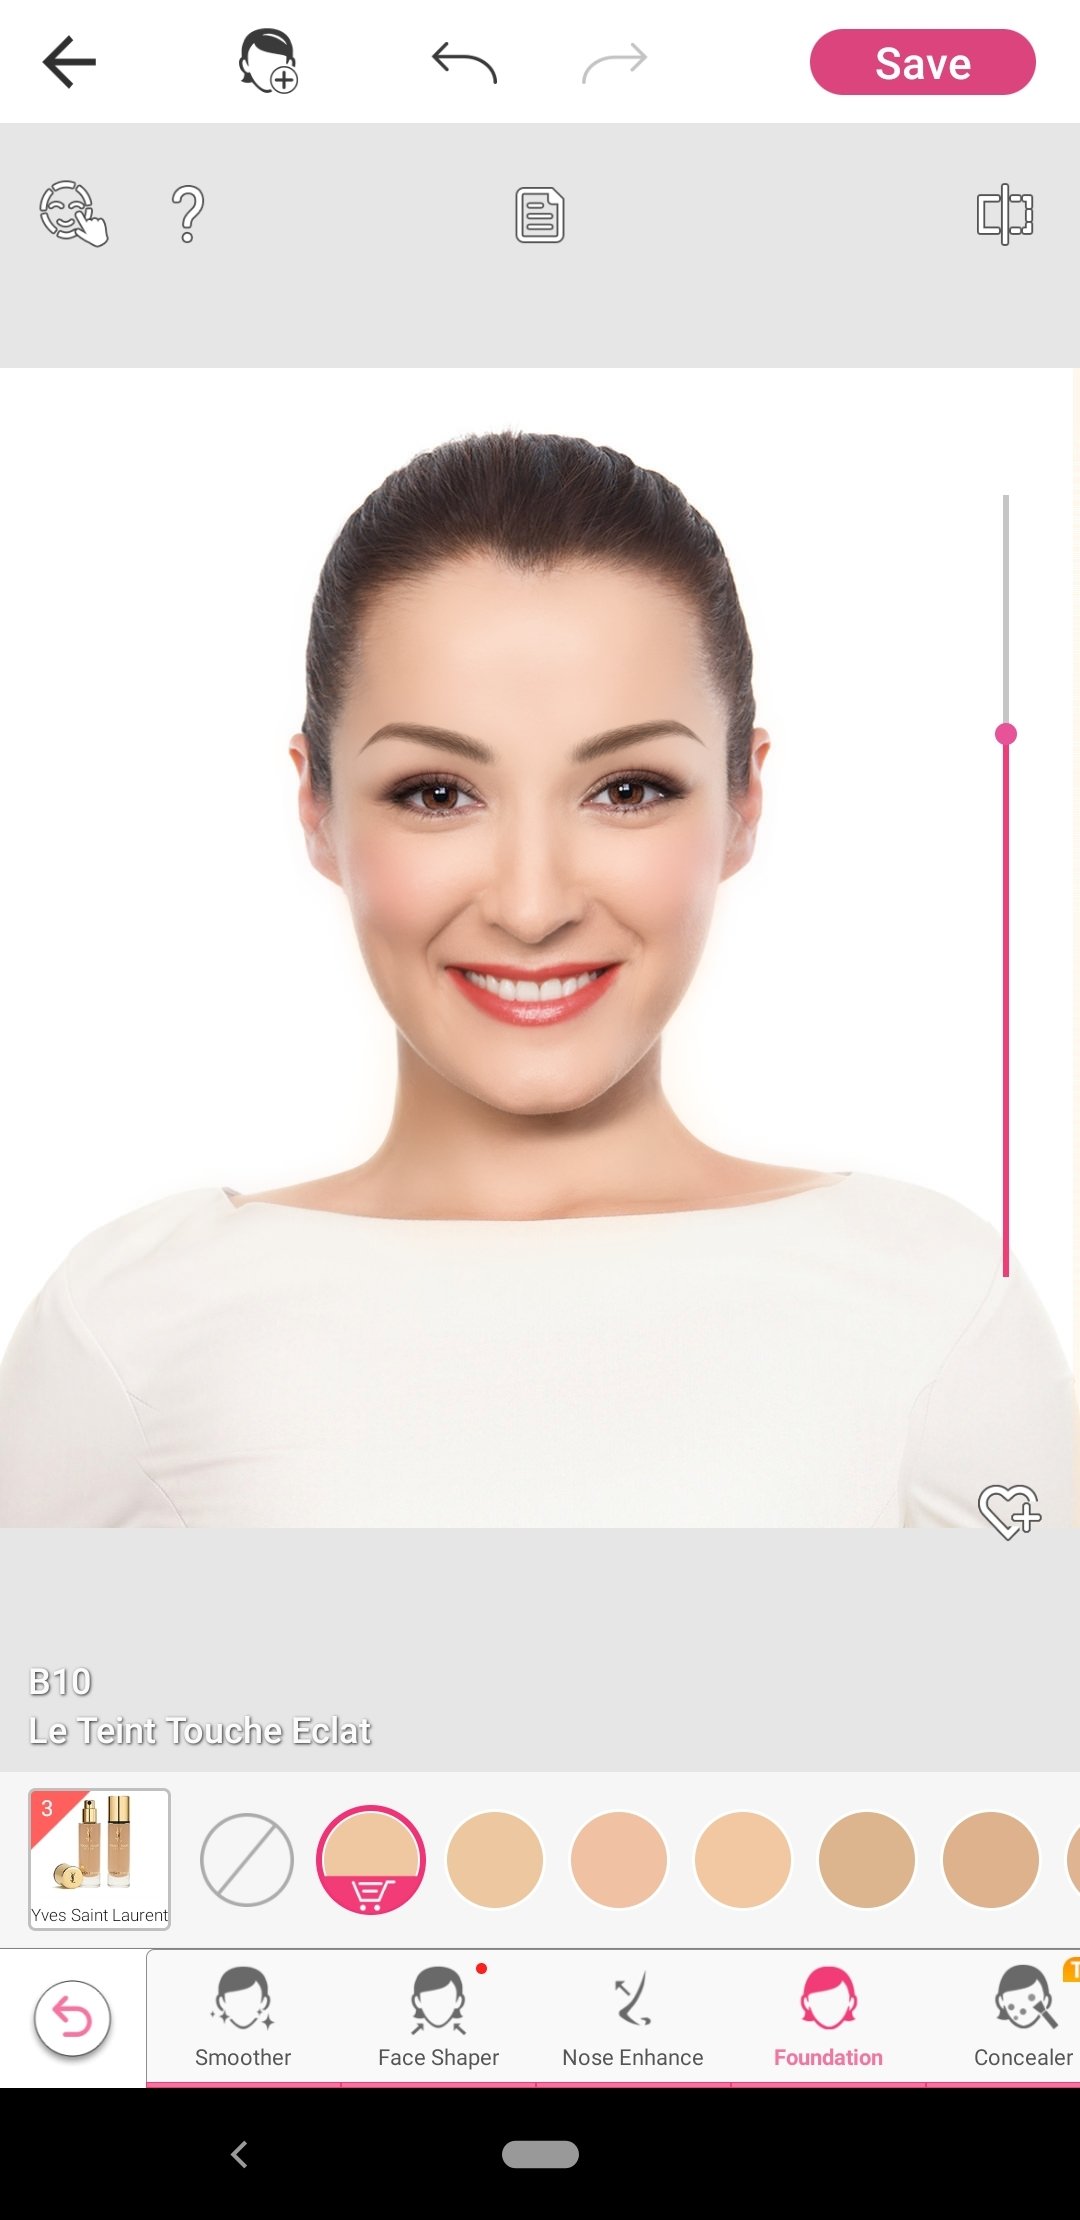 YouCam Makeup APK download - YouCam